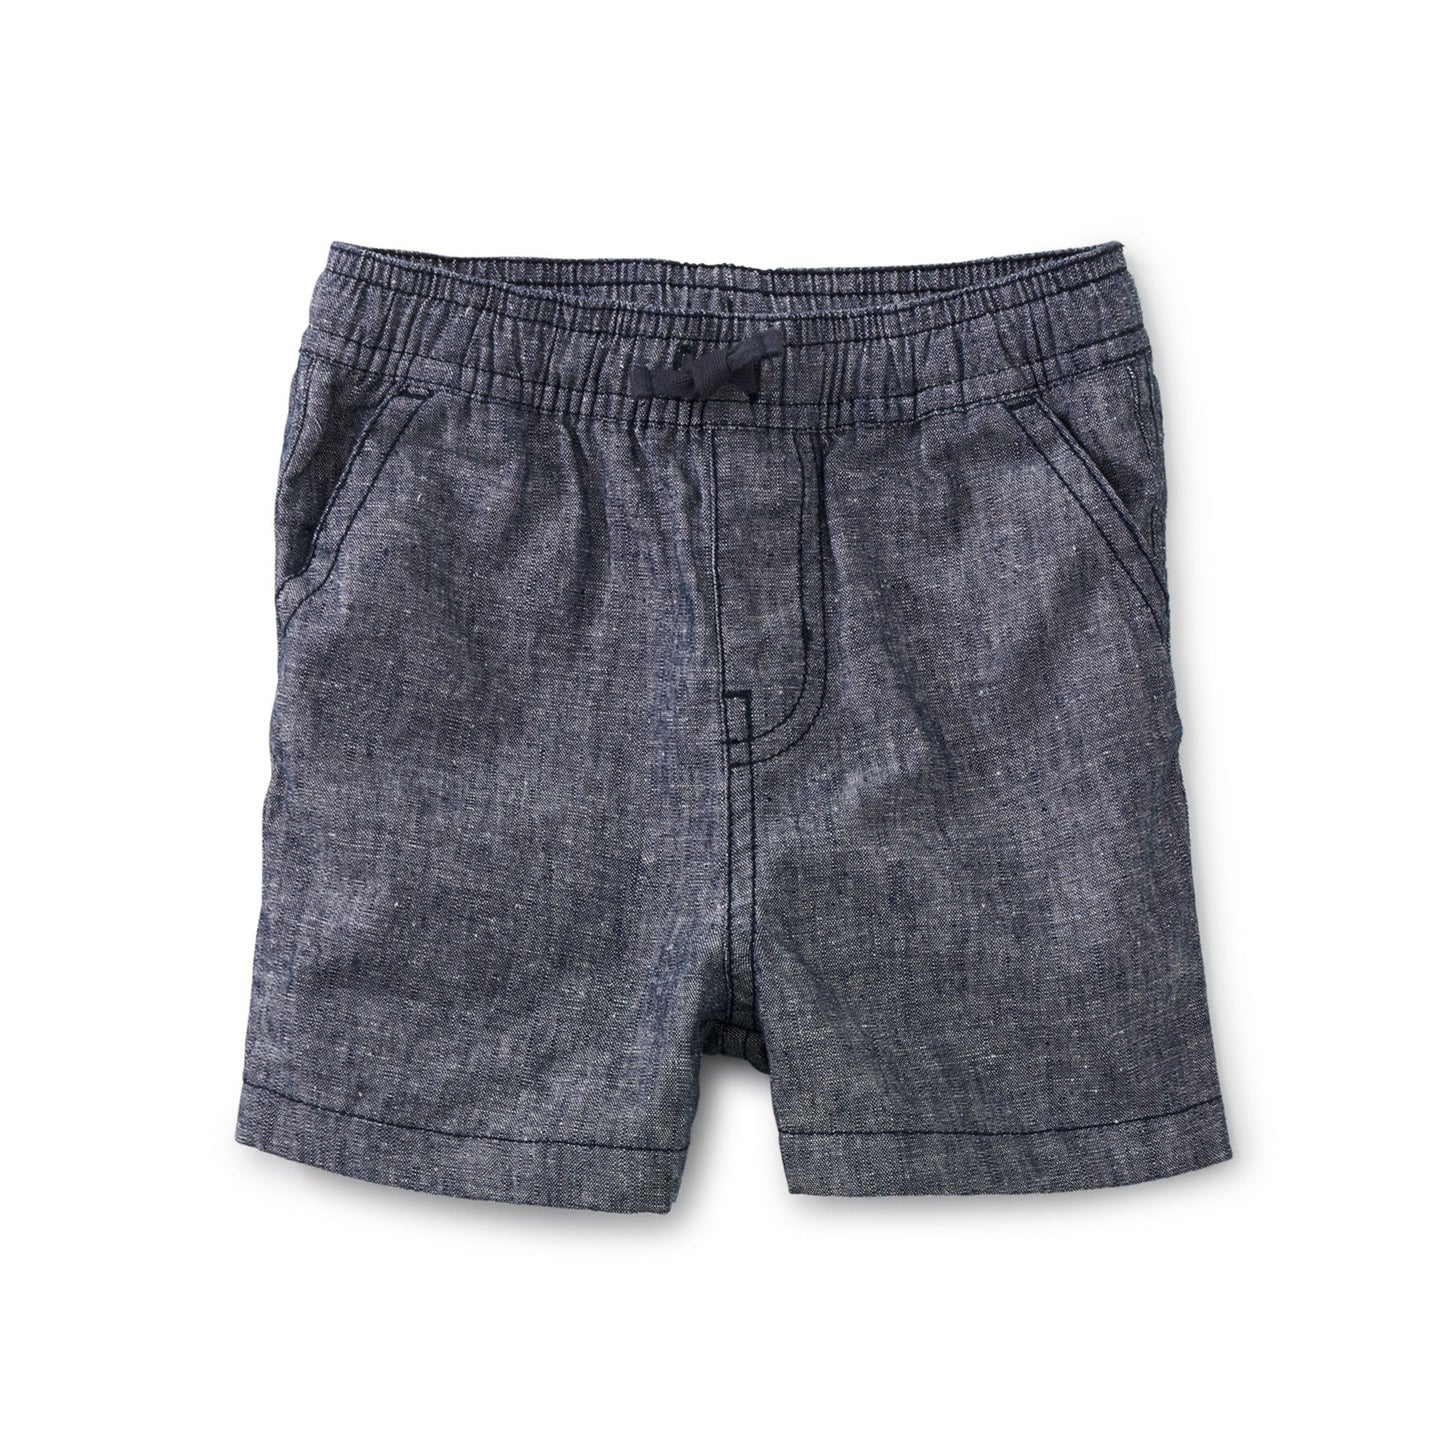 Chambray Discovery Baby Shorts: Indigo